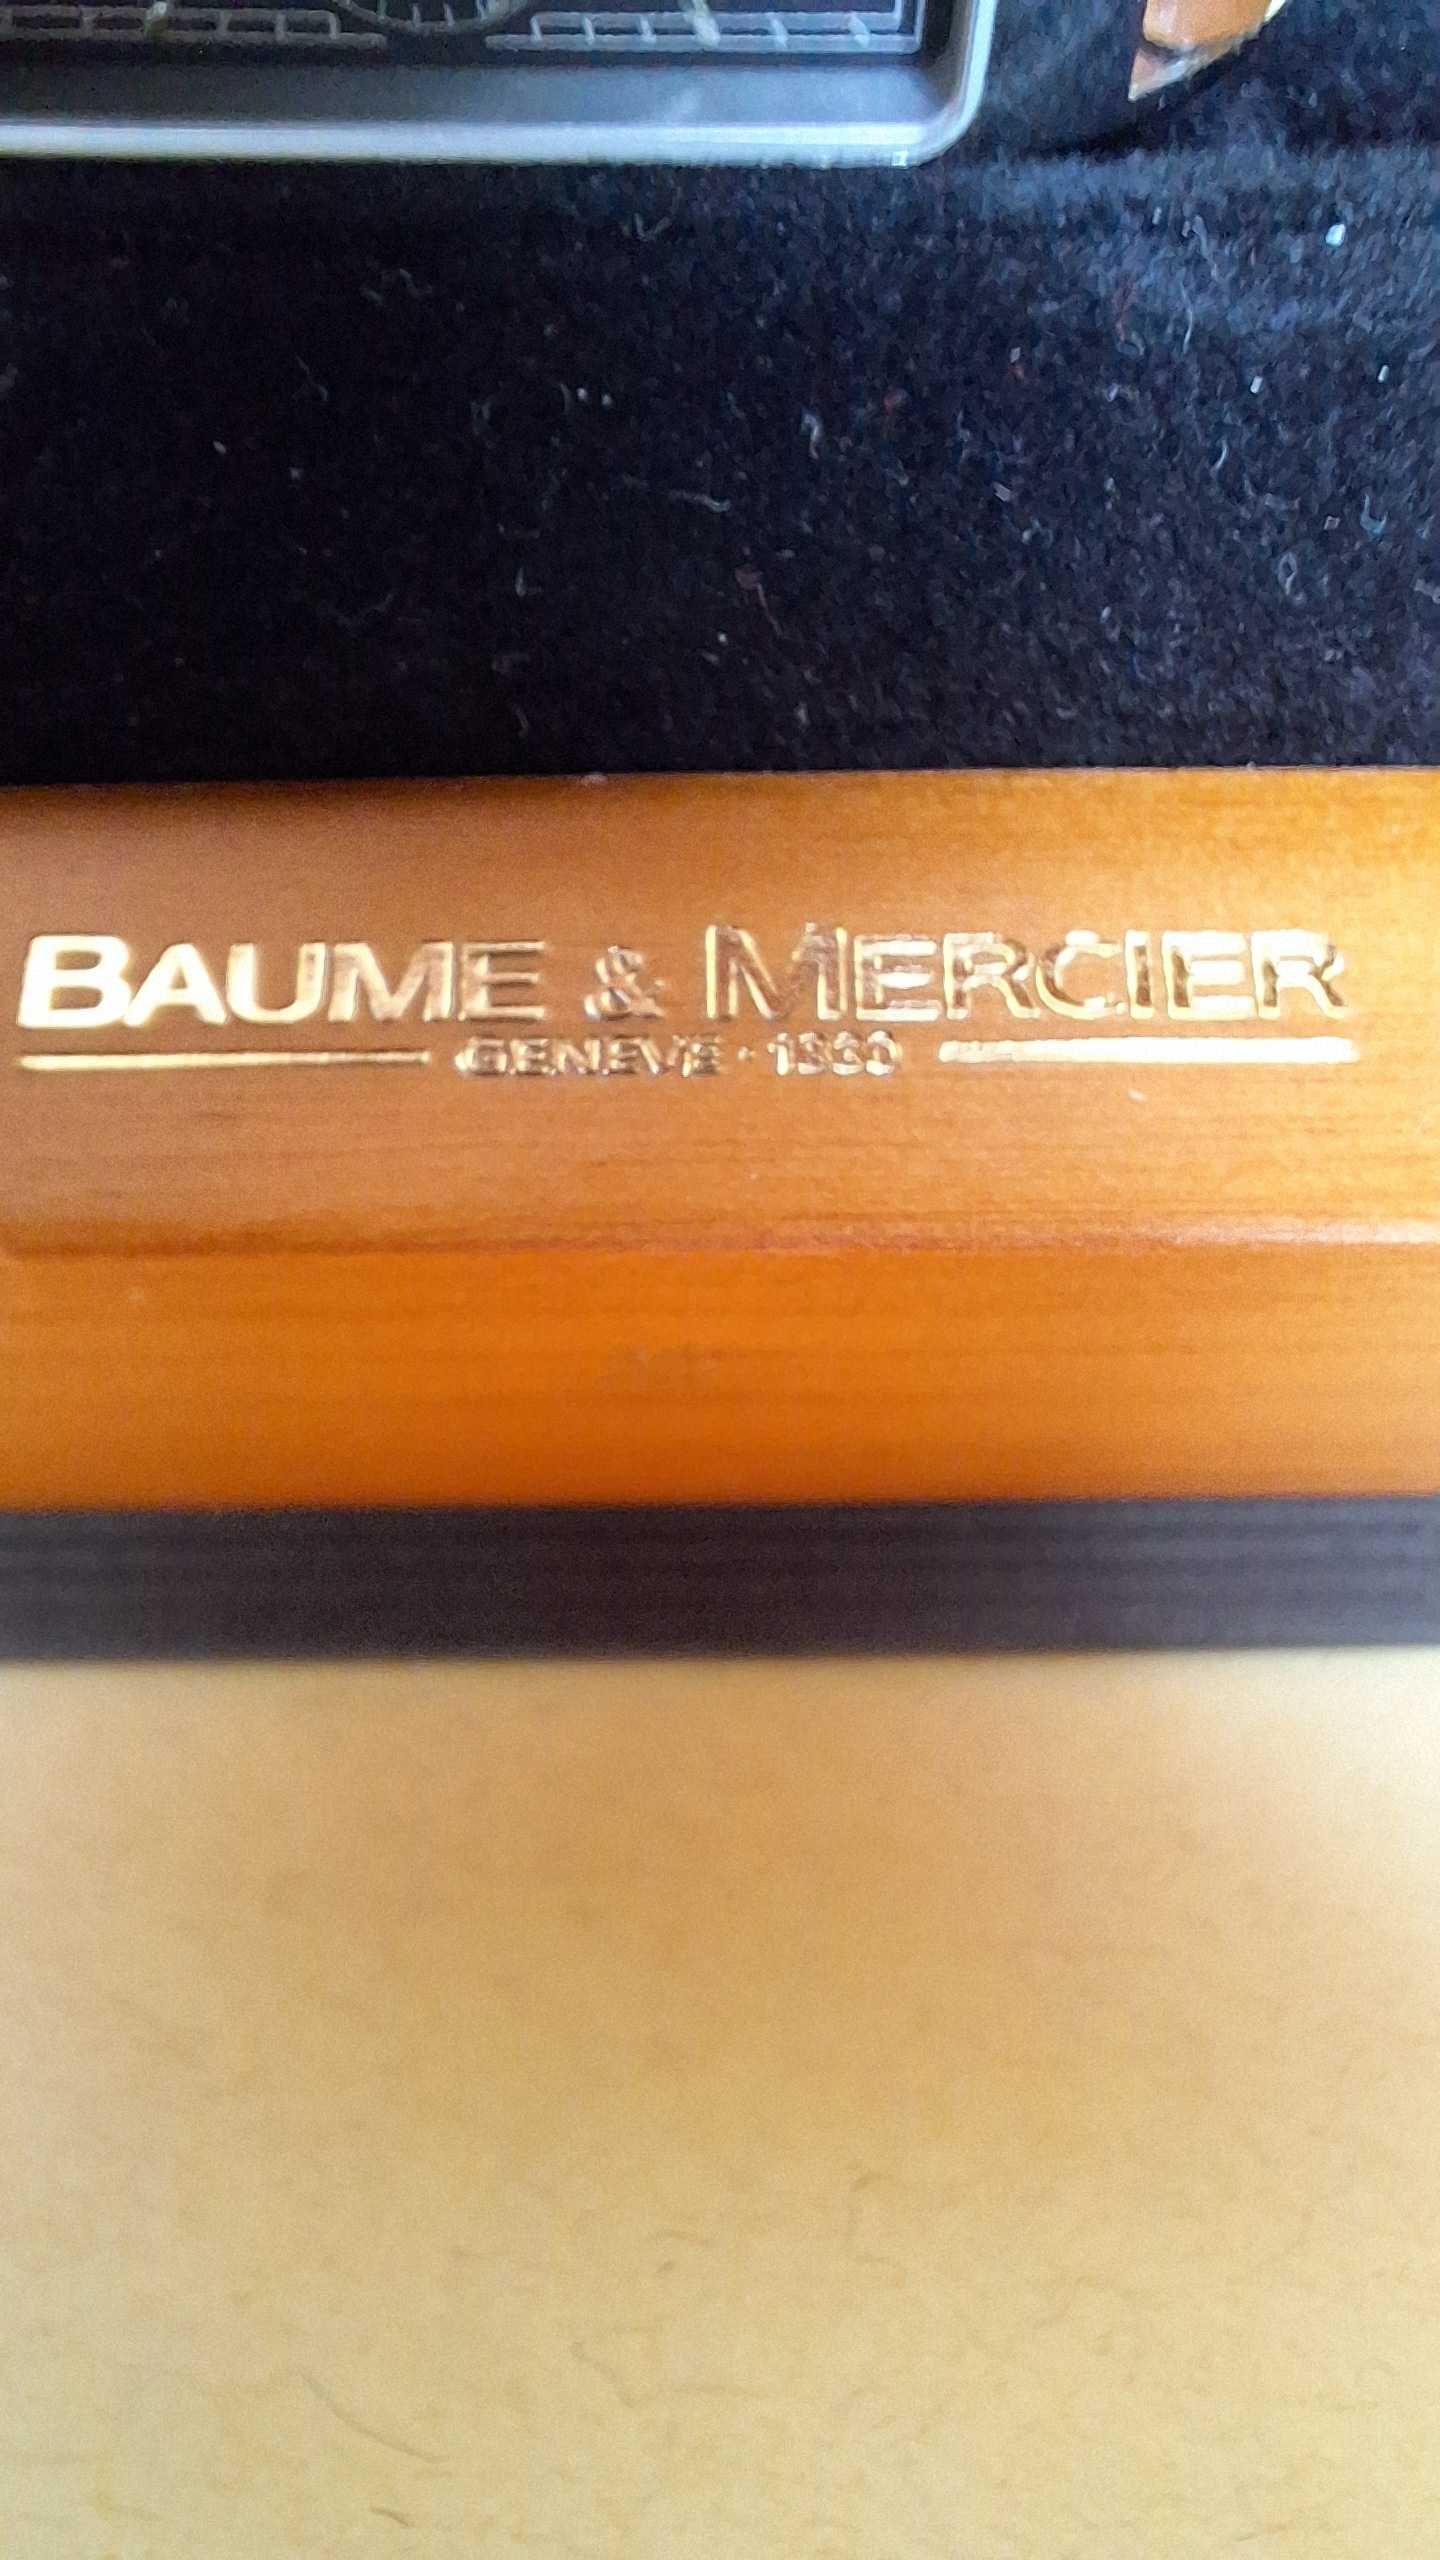 швейцарський годинник Baume & Mercier Hampton Classic 8608